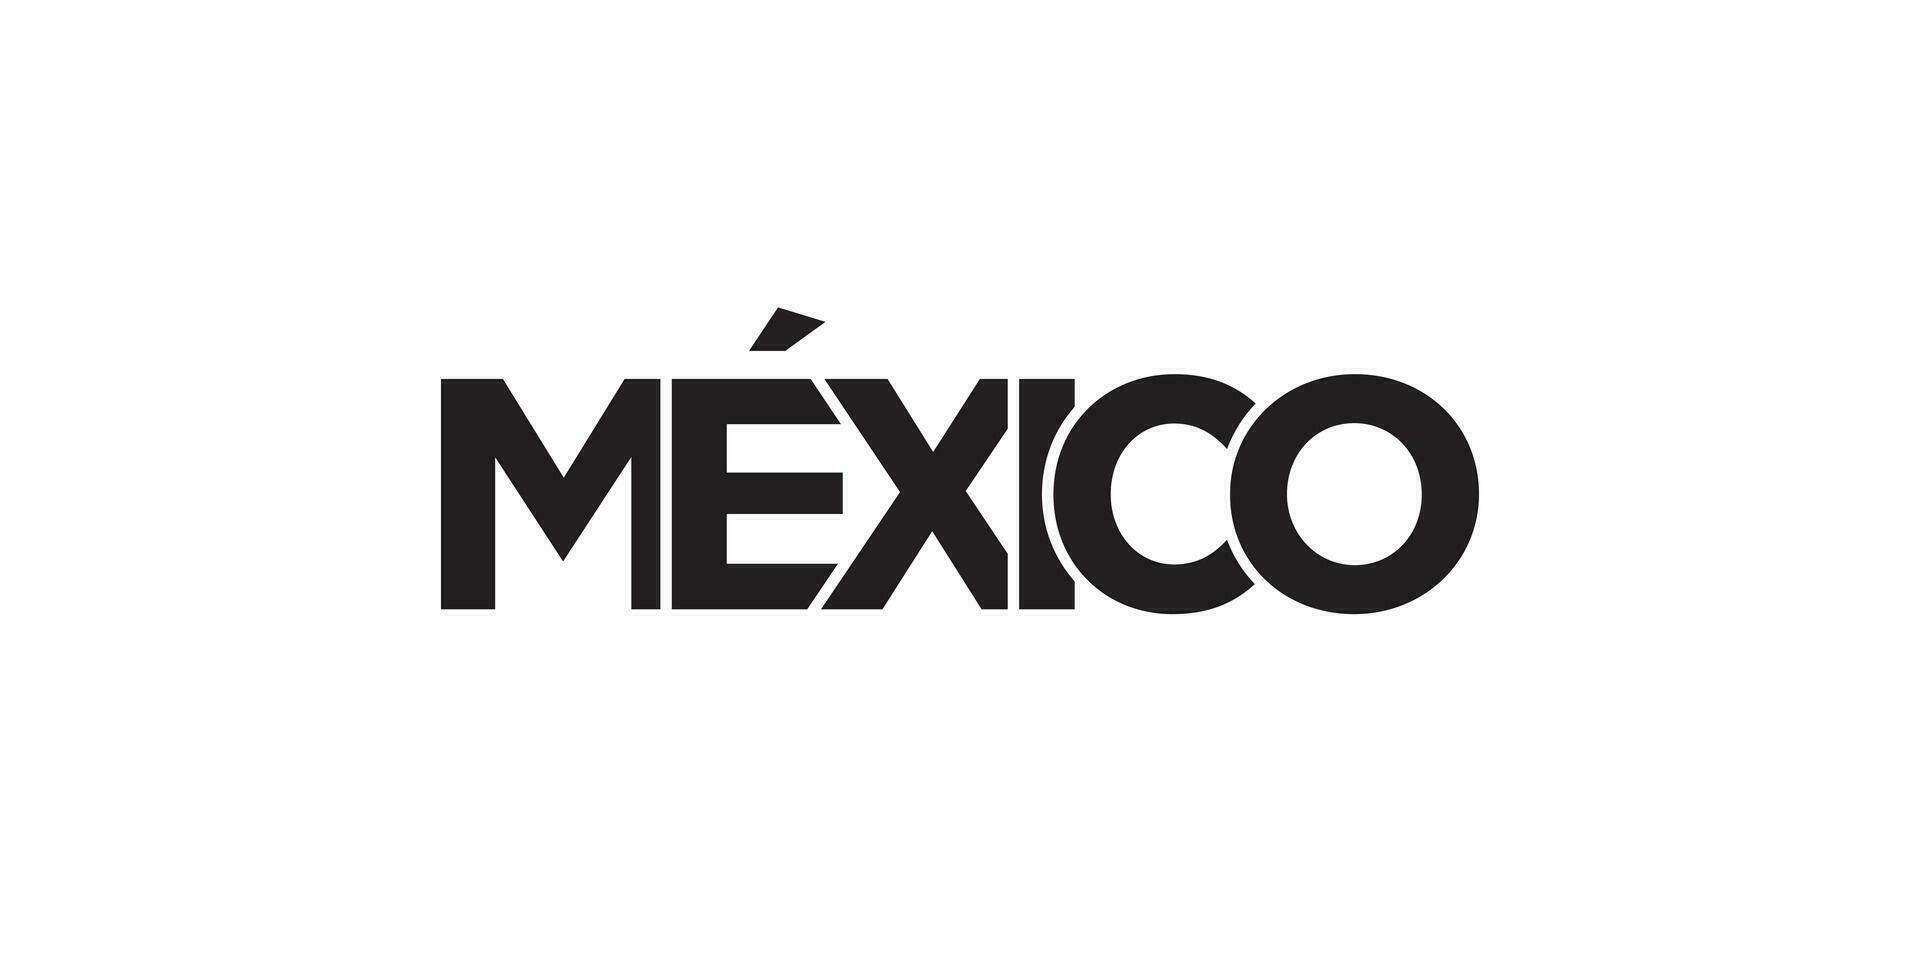 mexico emblem. de design funktioner en geometrisk stil, vektor illustration med djärv typografi i en modern font. de grafisk slogan text.